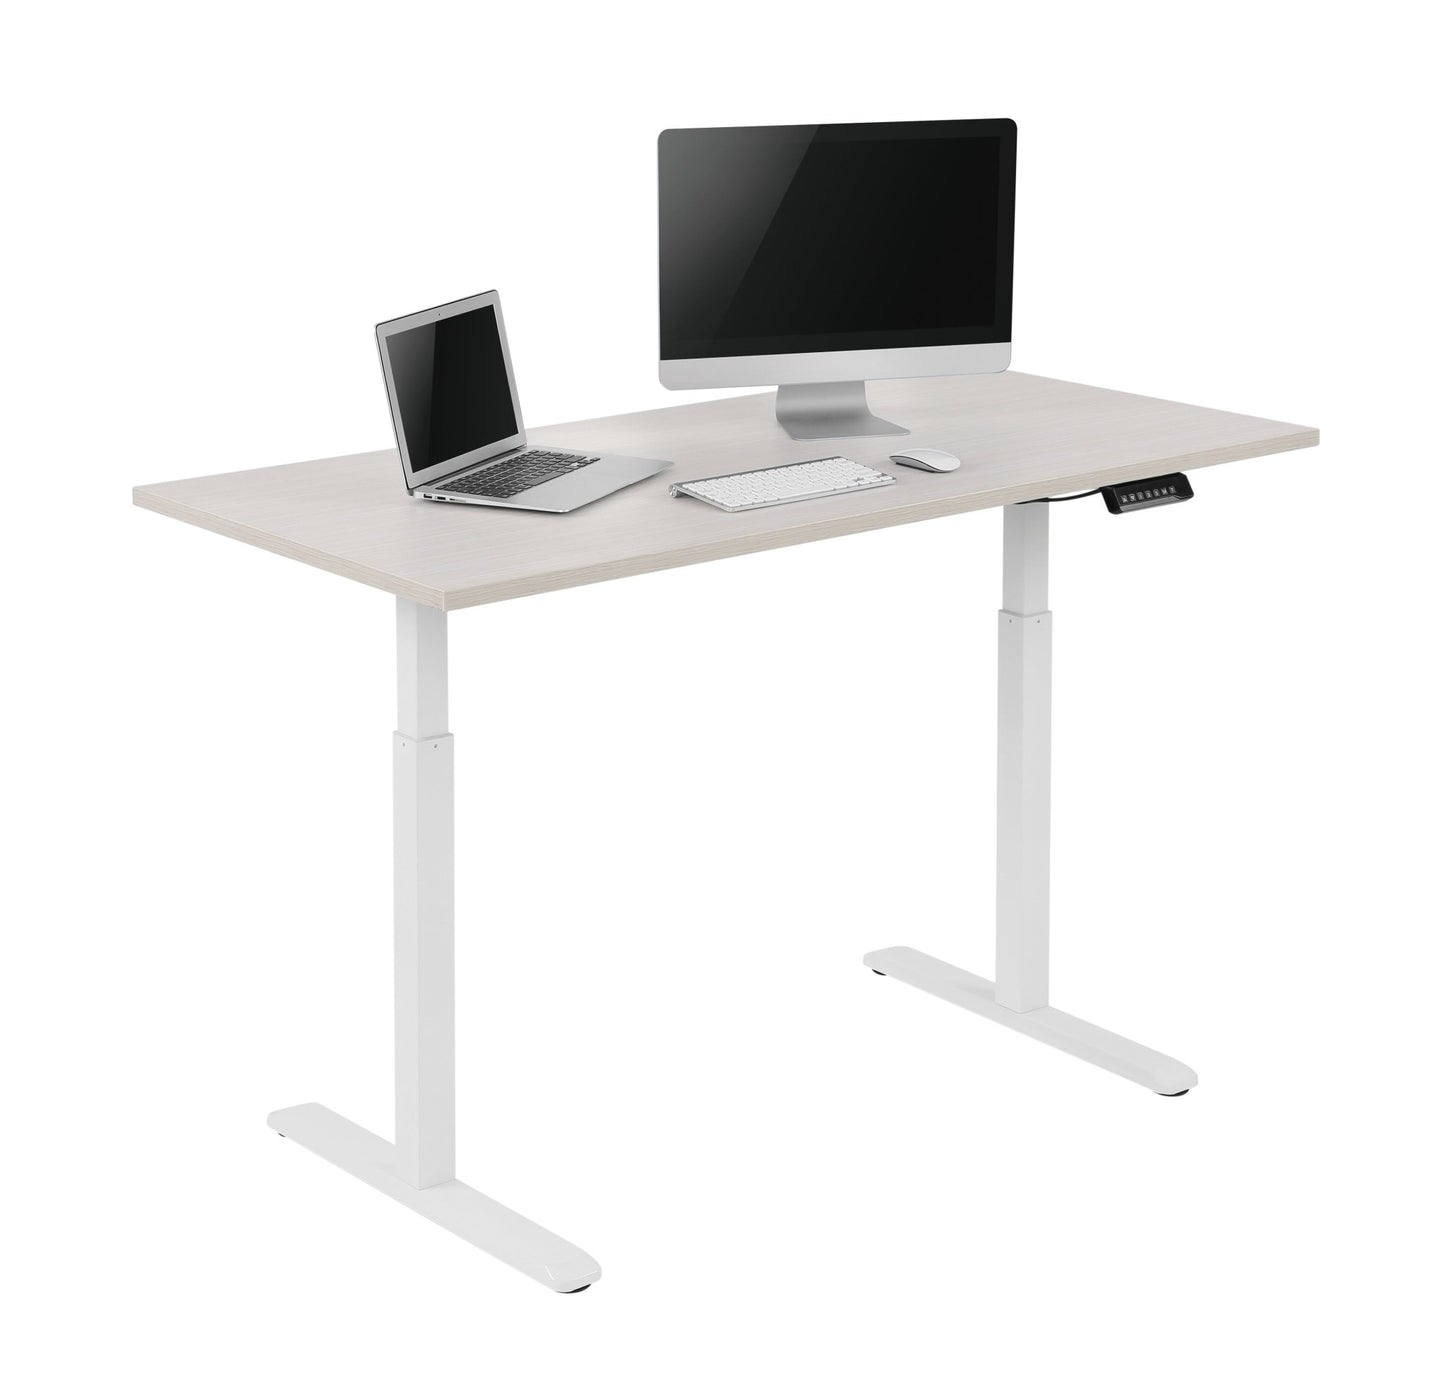 Electric height adjustable standing desk (Standard) - Purpleark